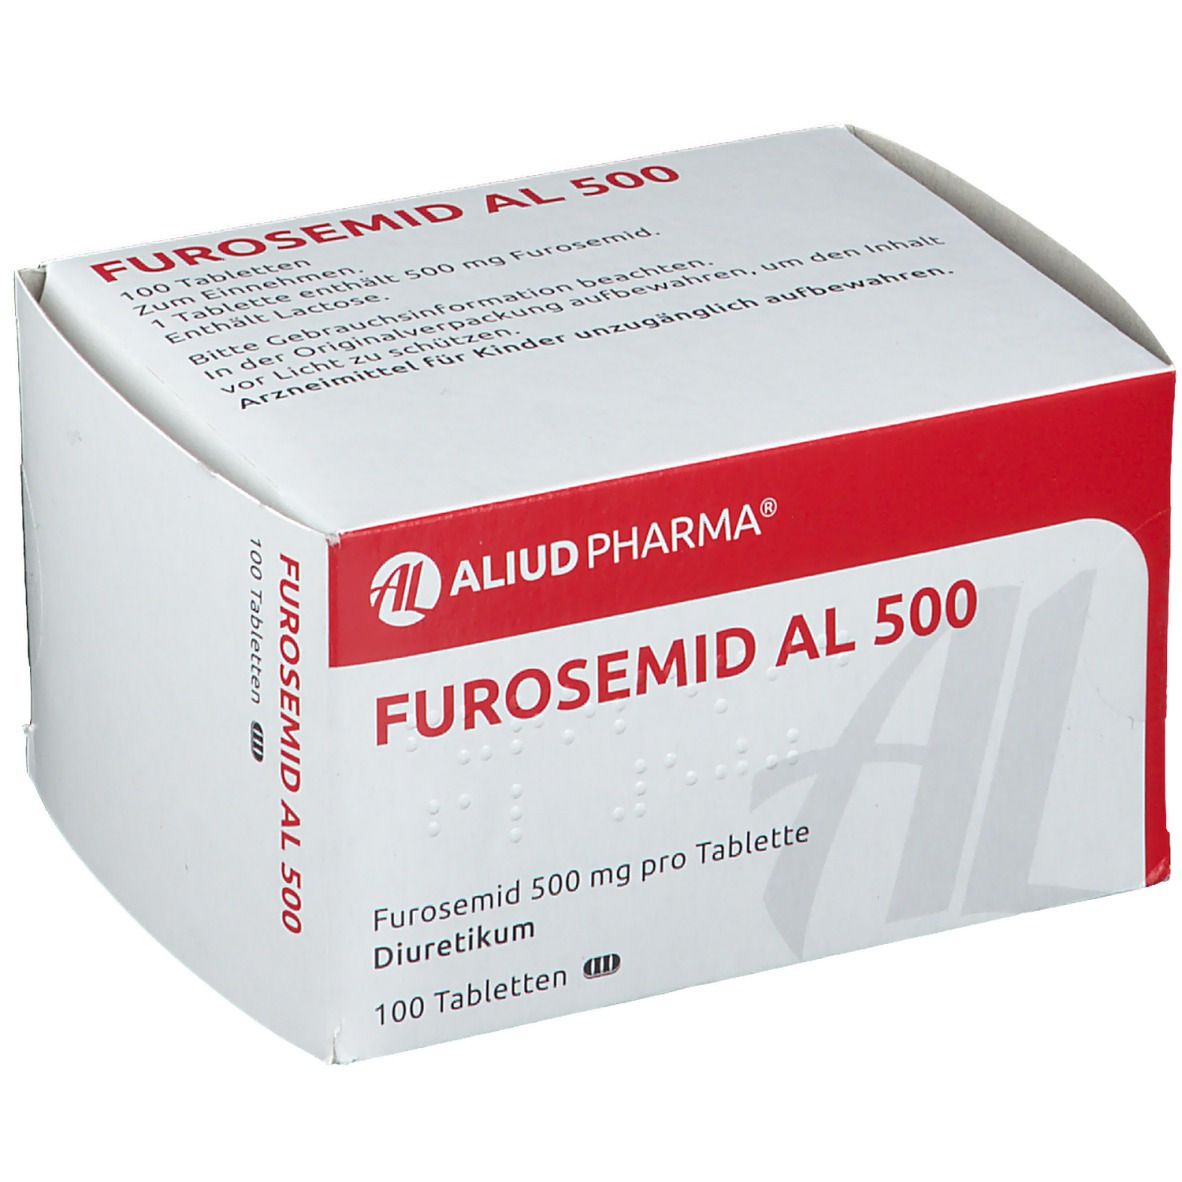 Furosemid AL 500